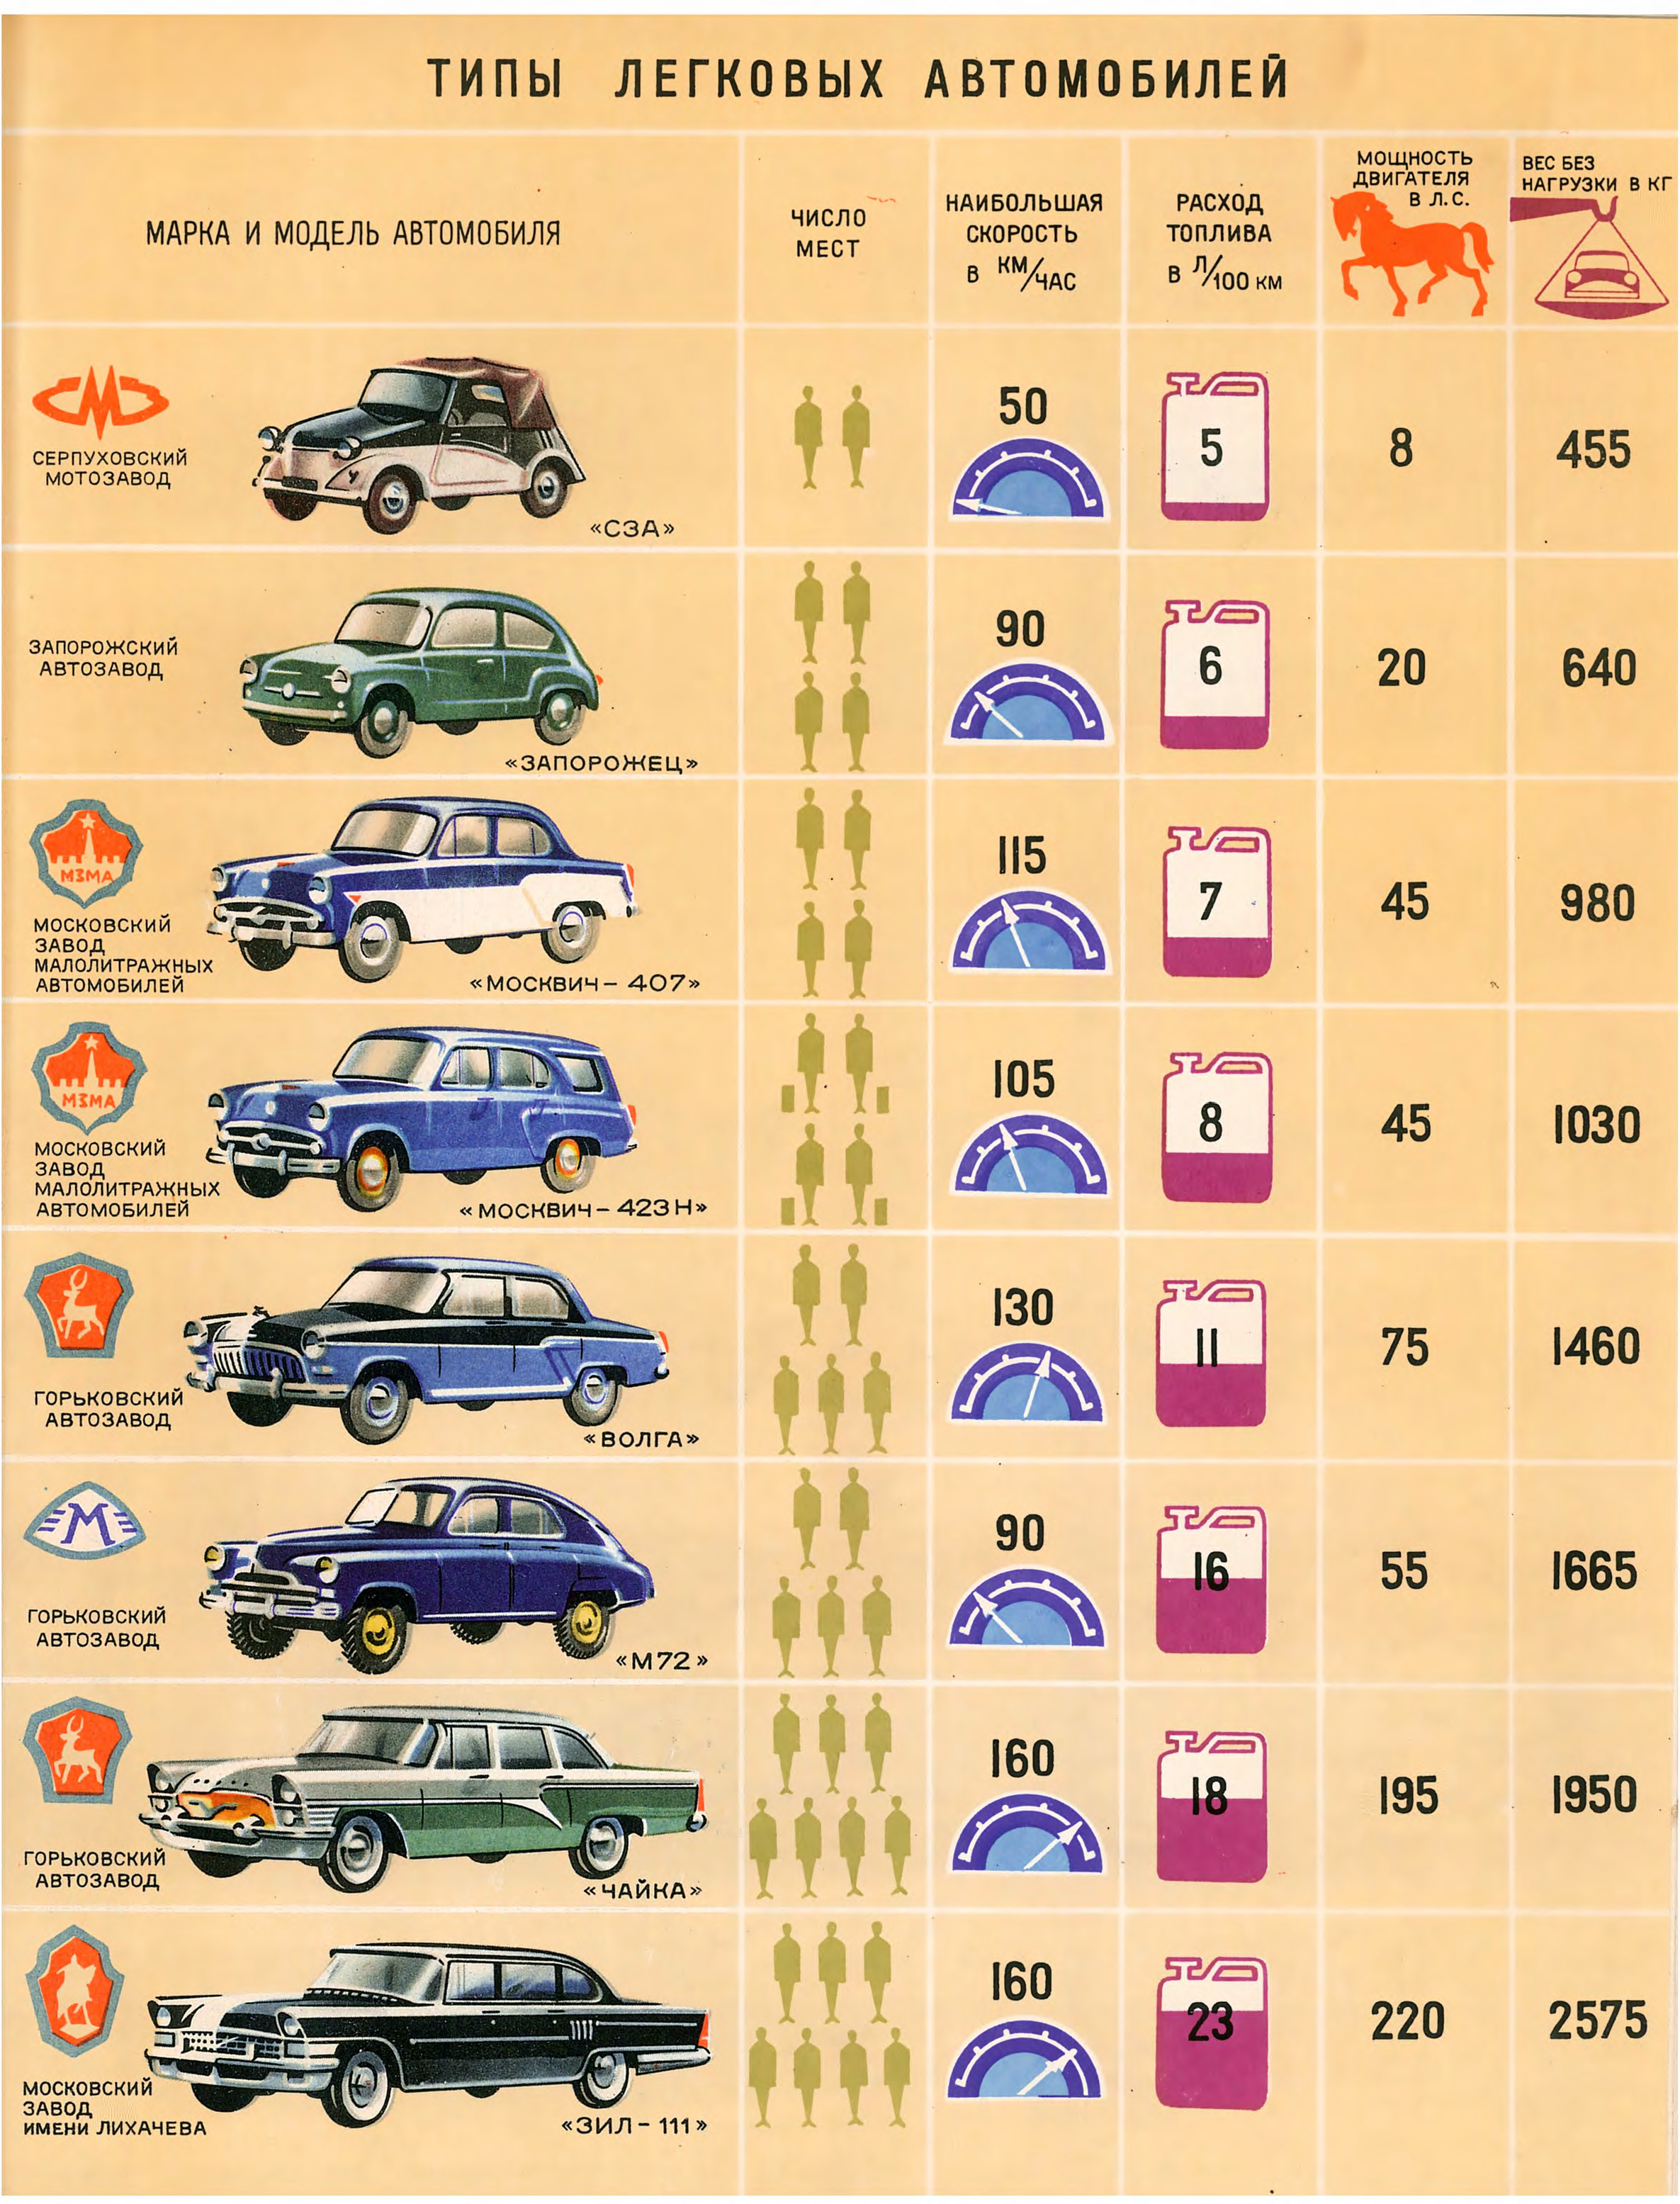 Марки автомобилей в каких городах производятся автомобили